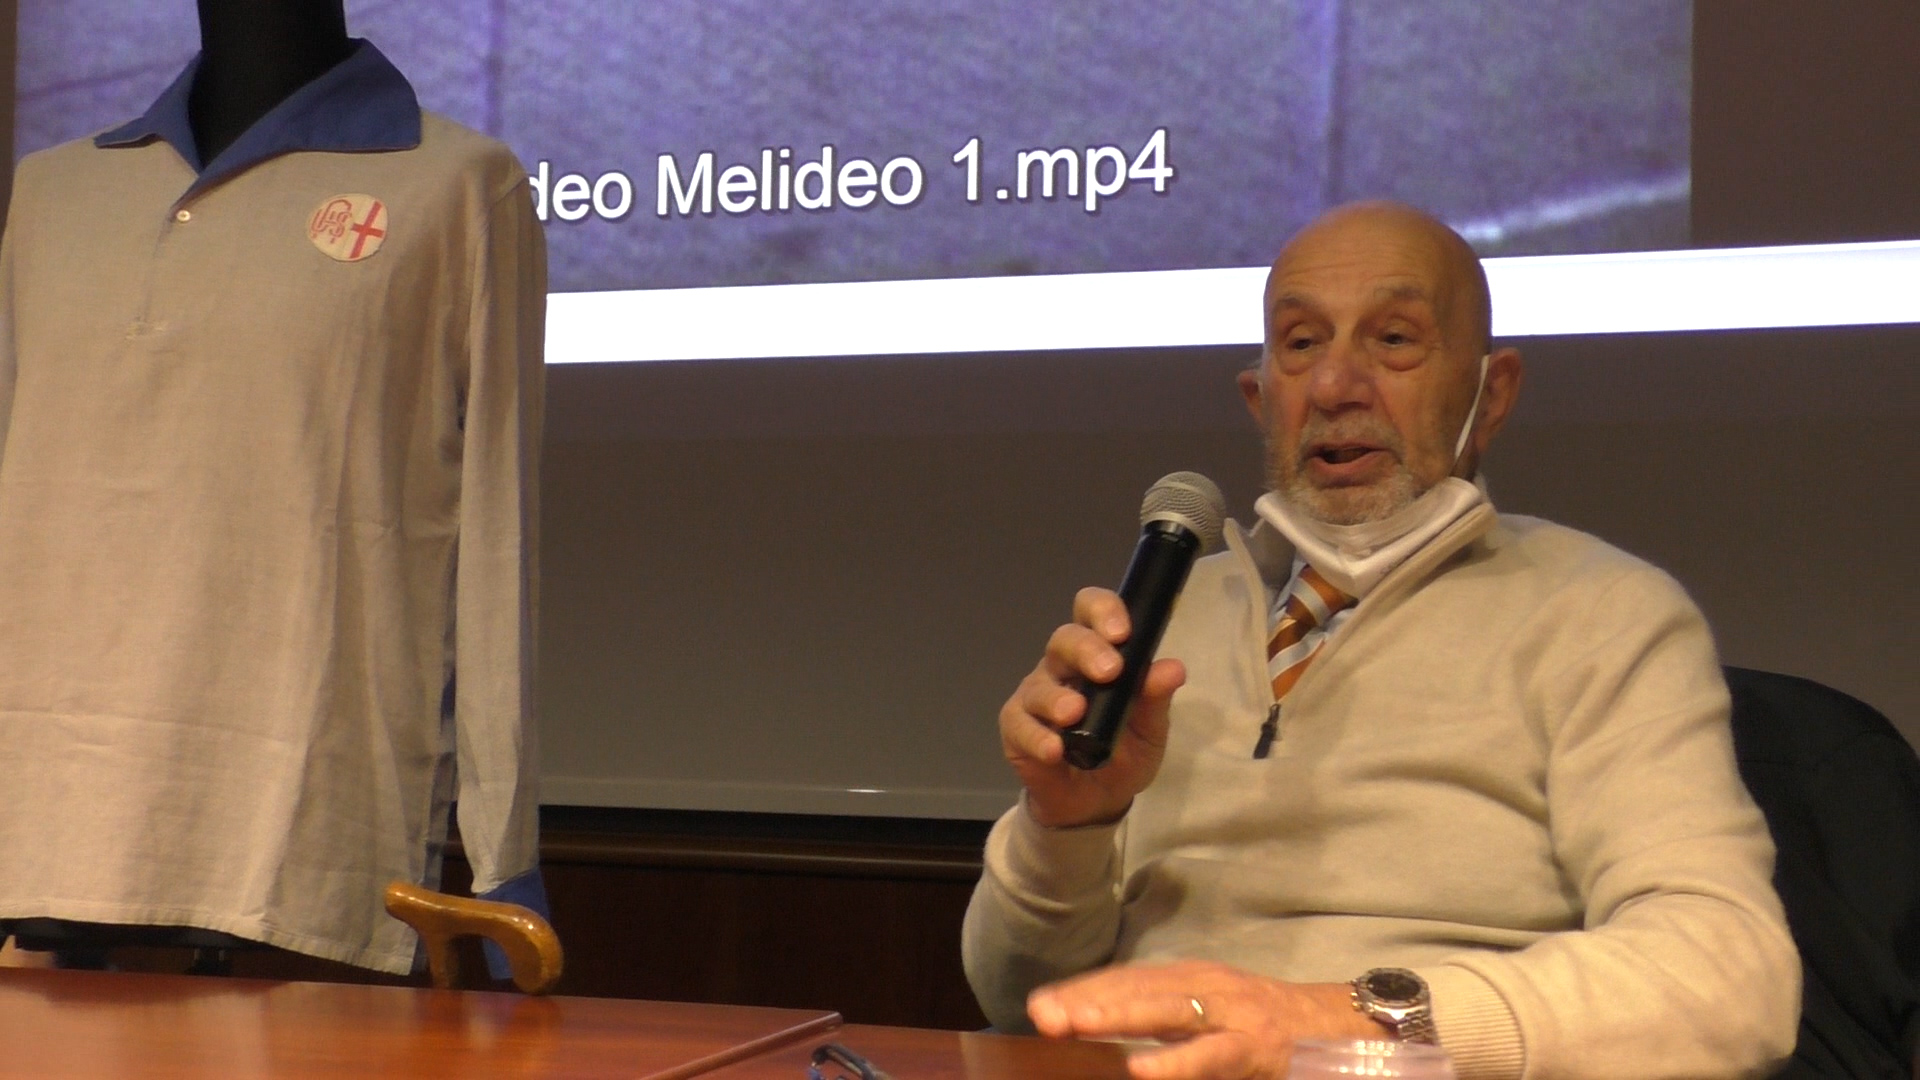 110 anni di Grigio, Rocco Melideo: “Riuscivamo a giocar bene anche su un campo di segatura”